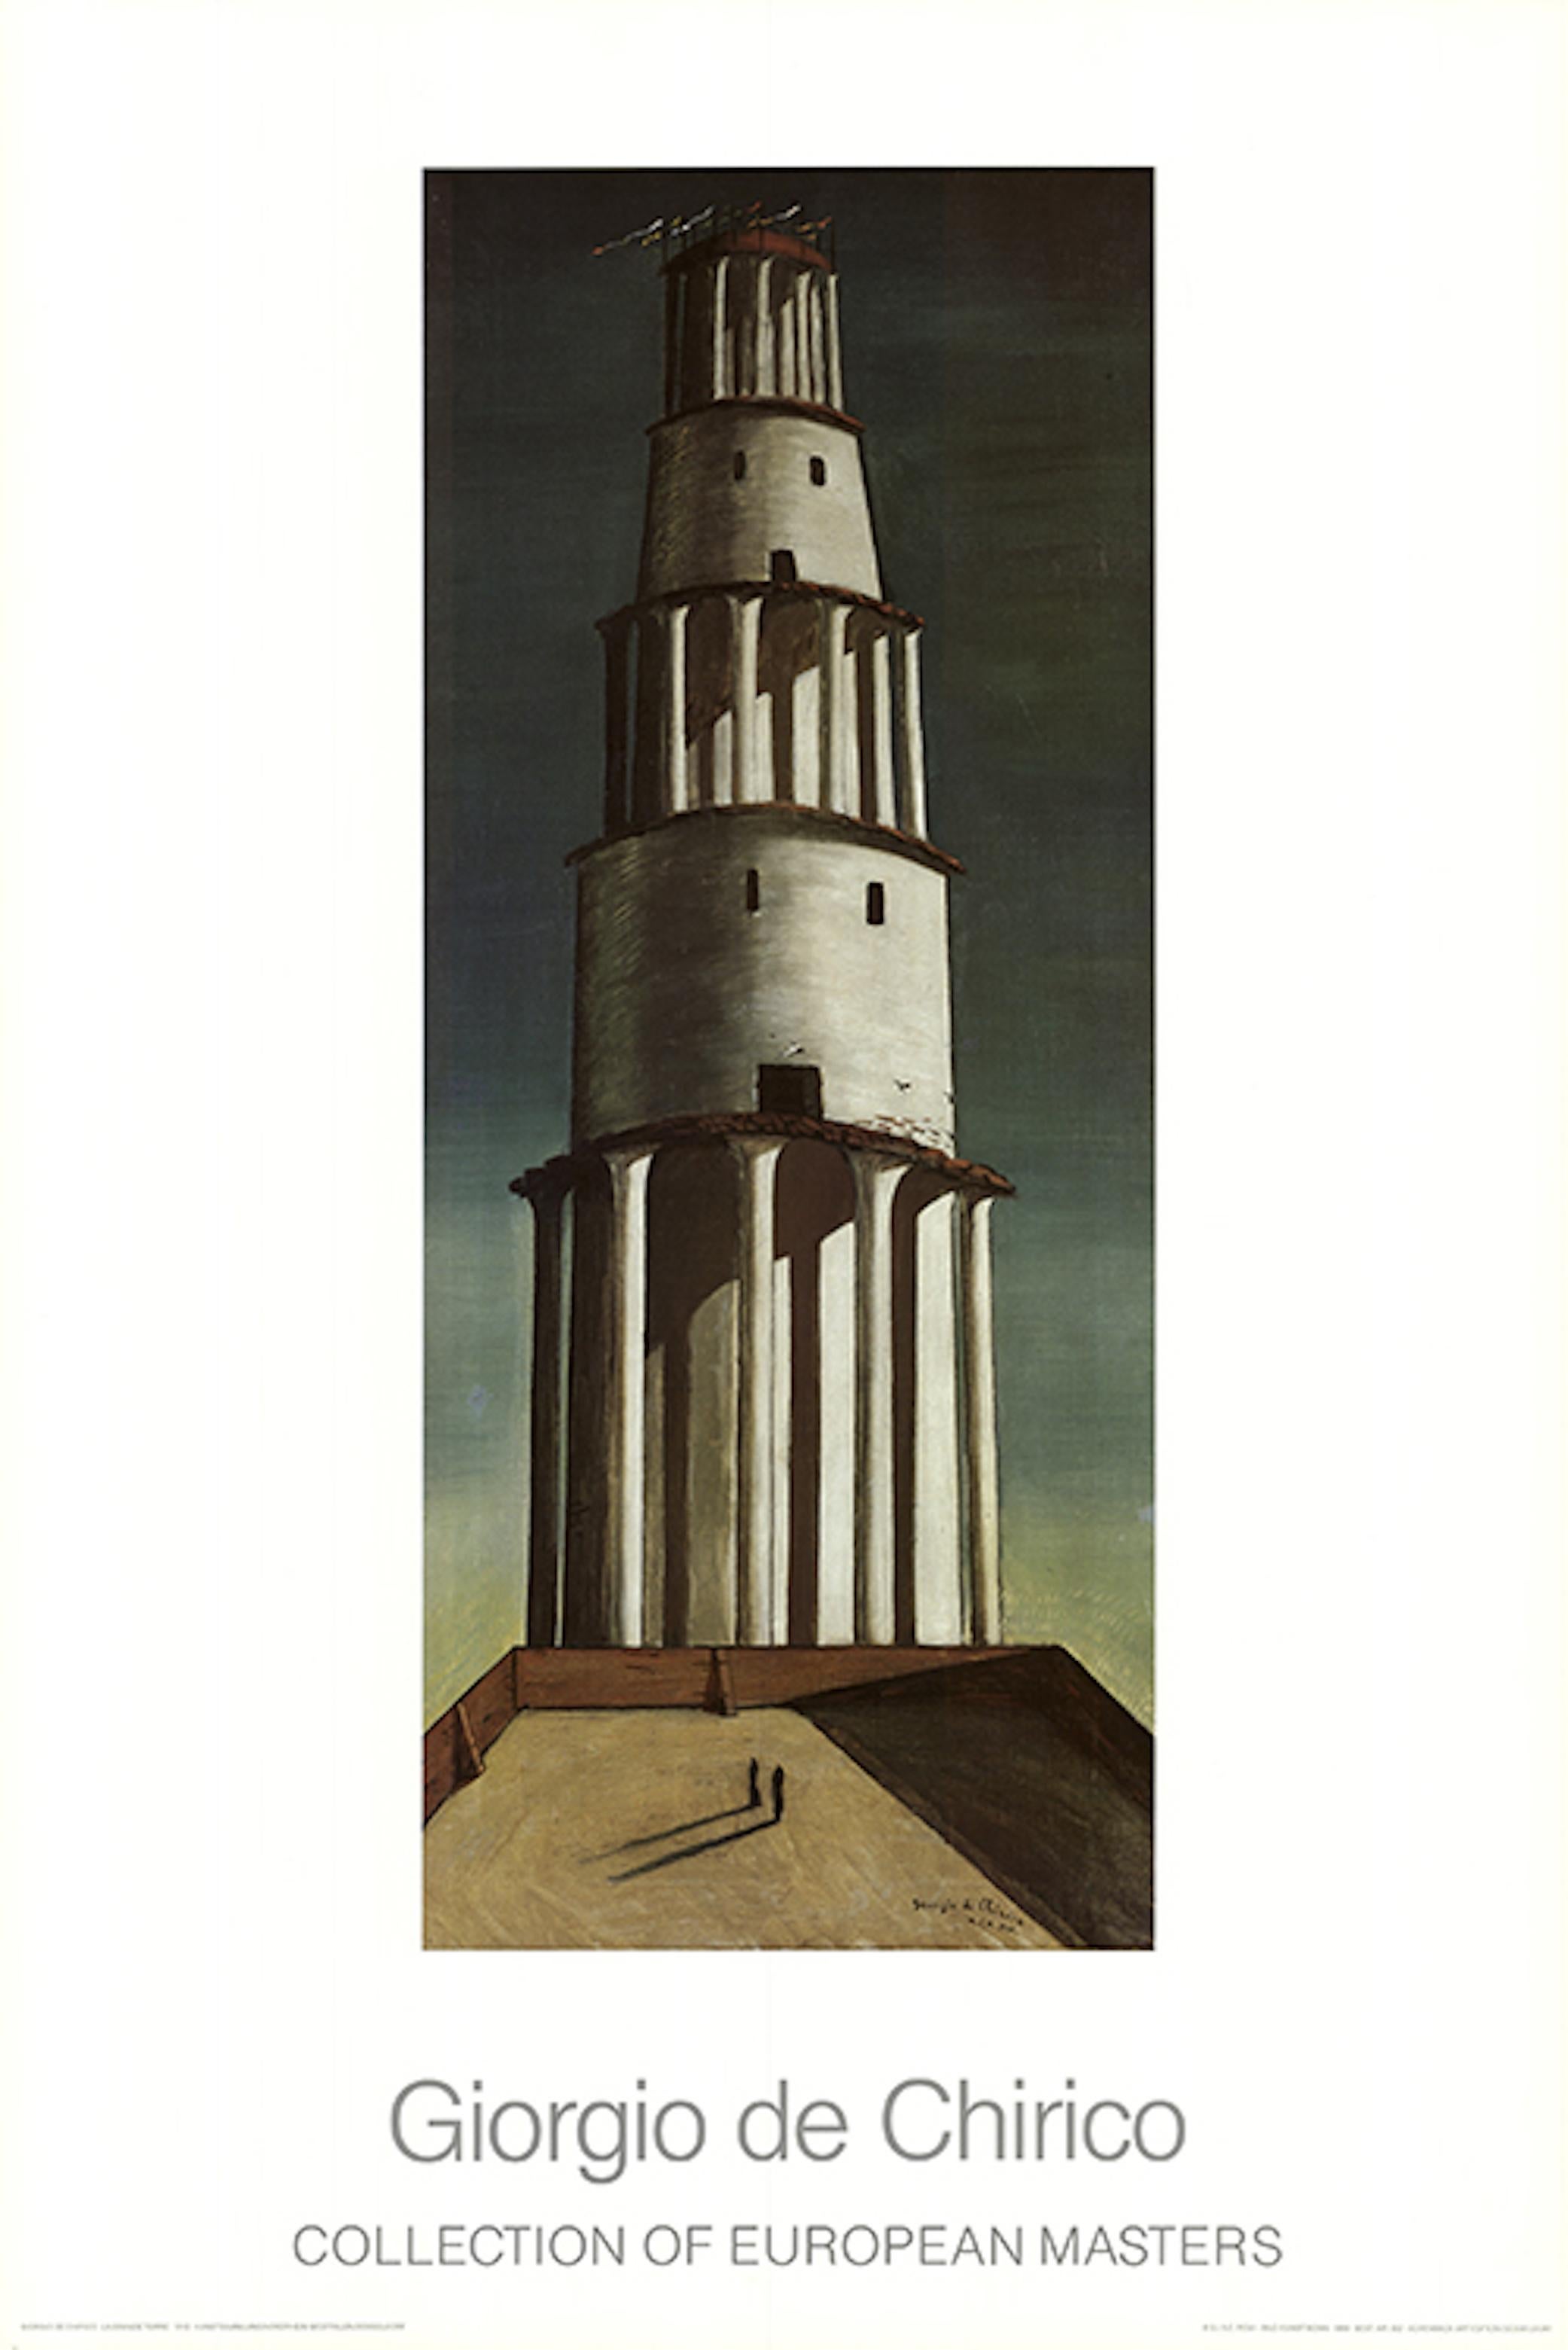 Surrealer hoher Turm, der an antike römische Arkaden erinnert, mit einem Spiel aus Schatten und unlogischer Perspektive.

Kunstdruck nach dem Original von 1913
Signiert und datiert im Druck
In gutem Zustand, minimale Lagerungsspuren